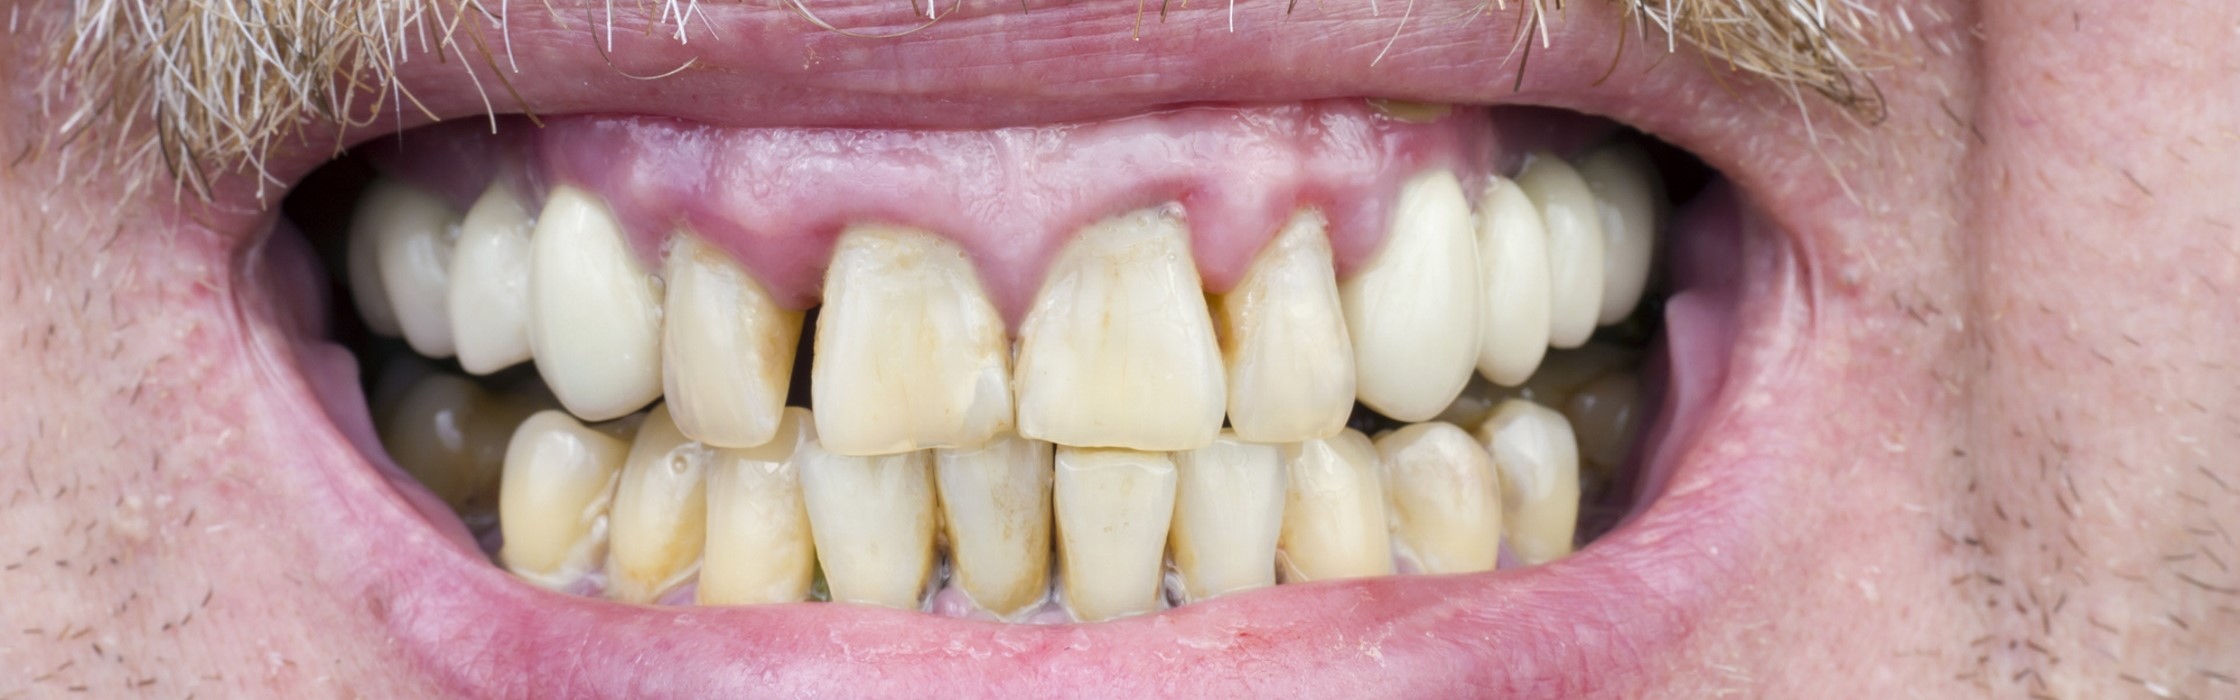 Freiliegende Zahnhälse: Symptome, Ursachen und Behandlung